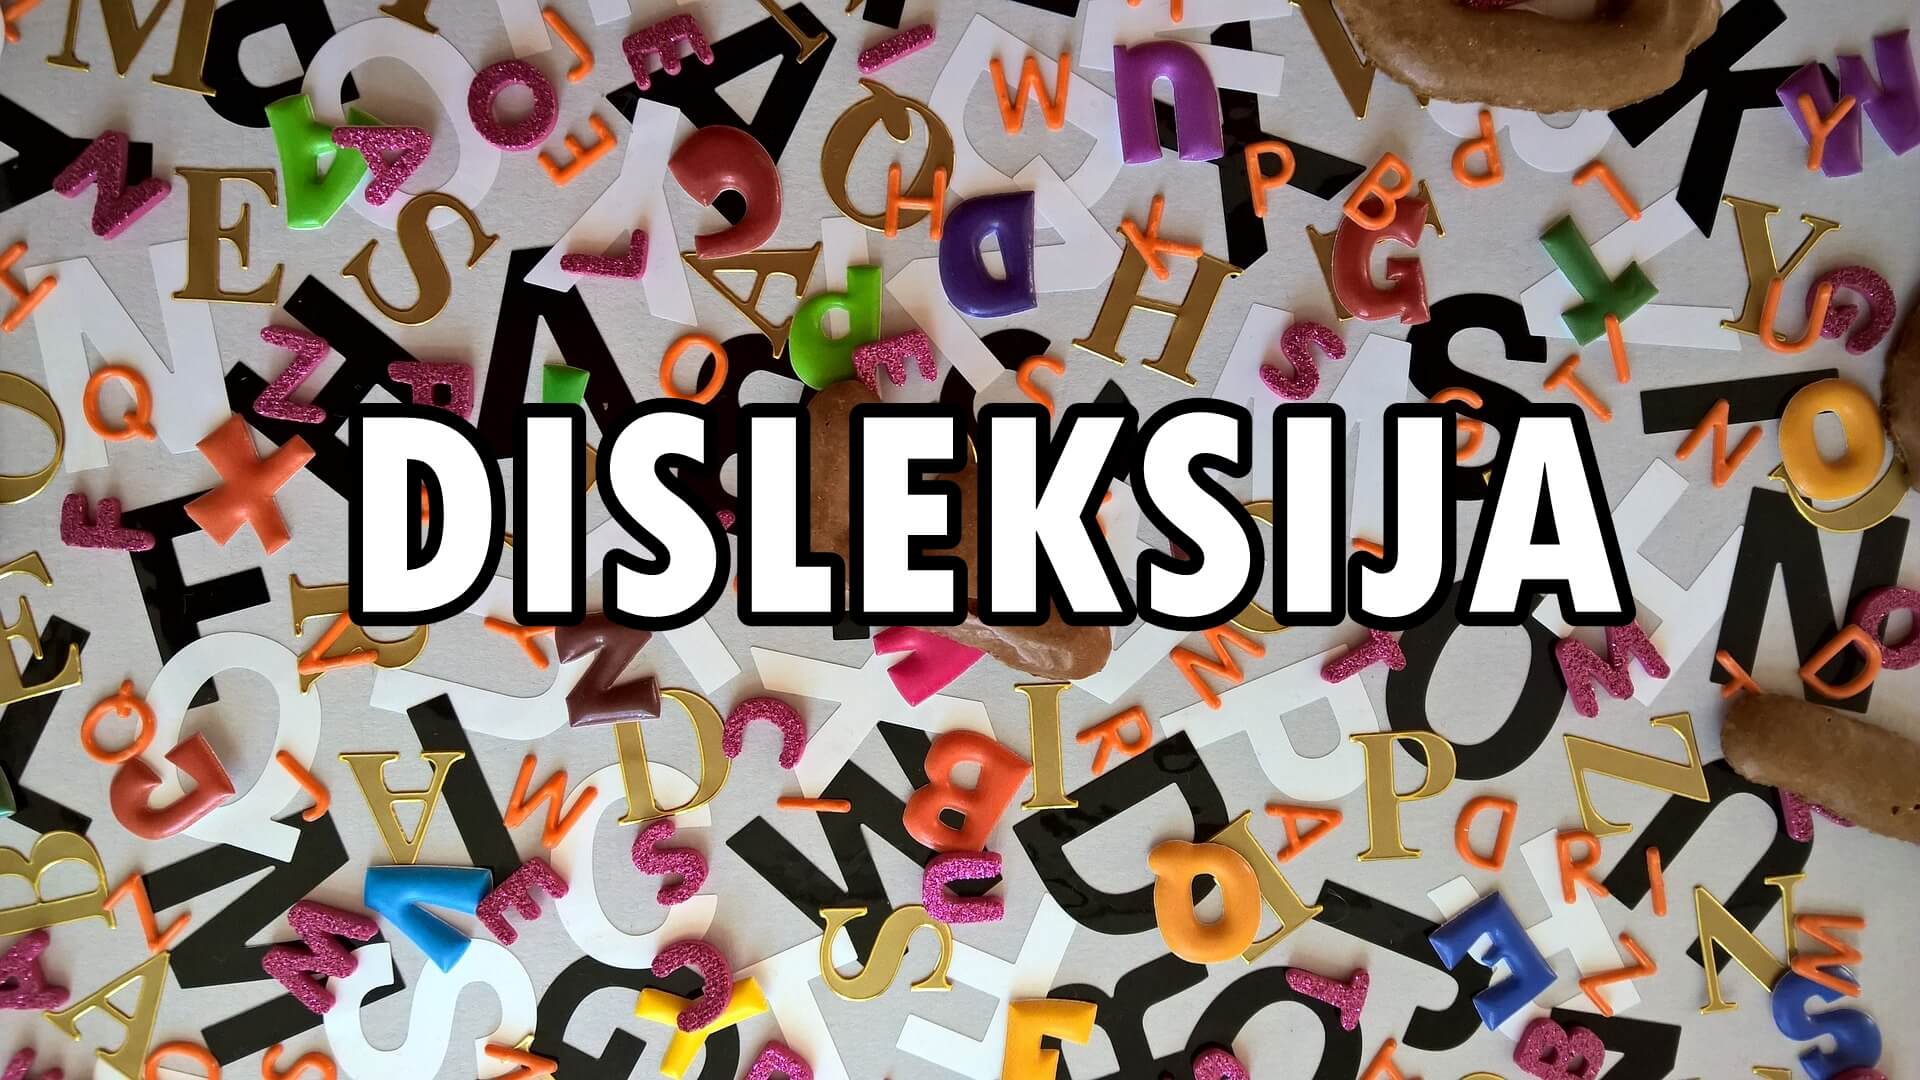 Utjecaj disleksije na život jednog disleksičara